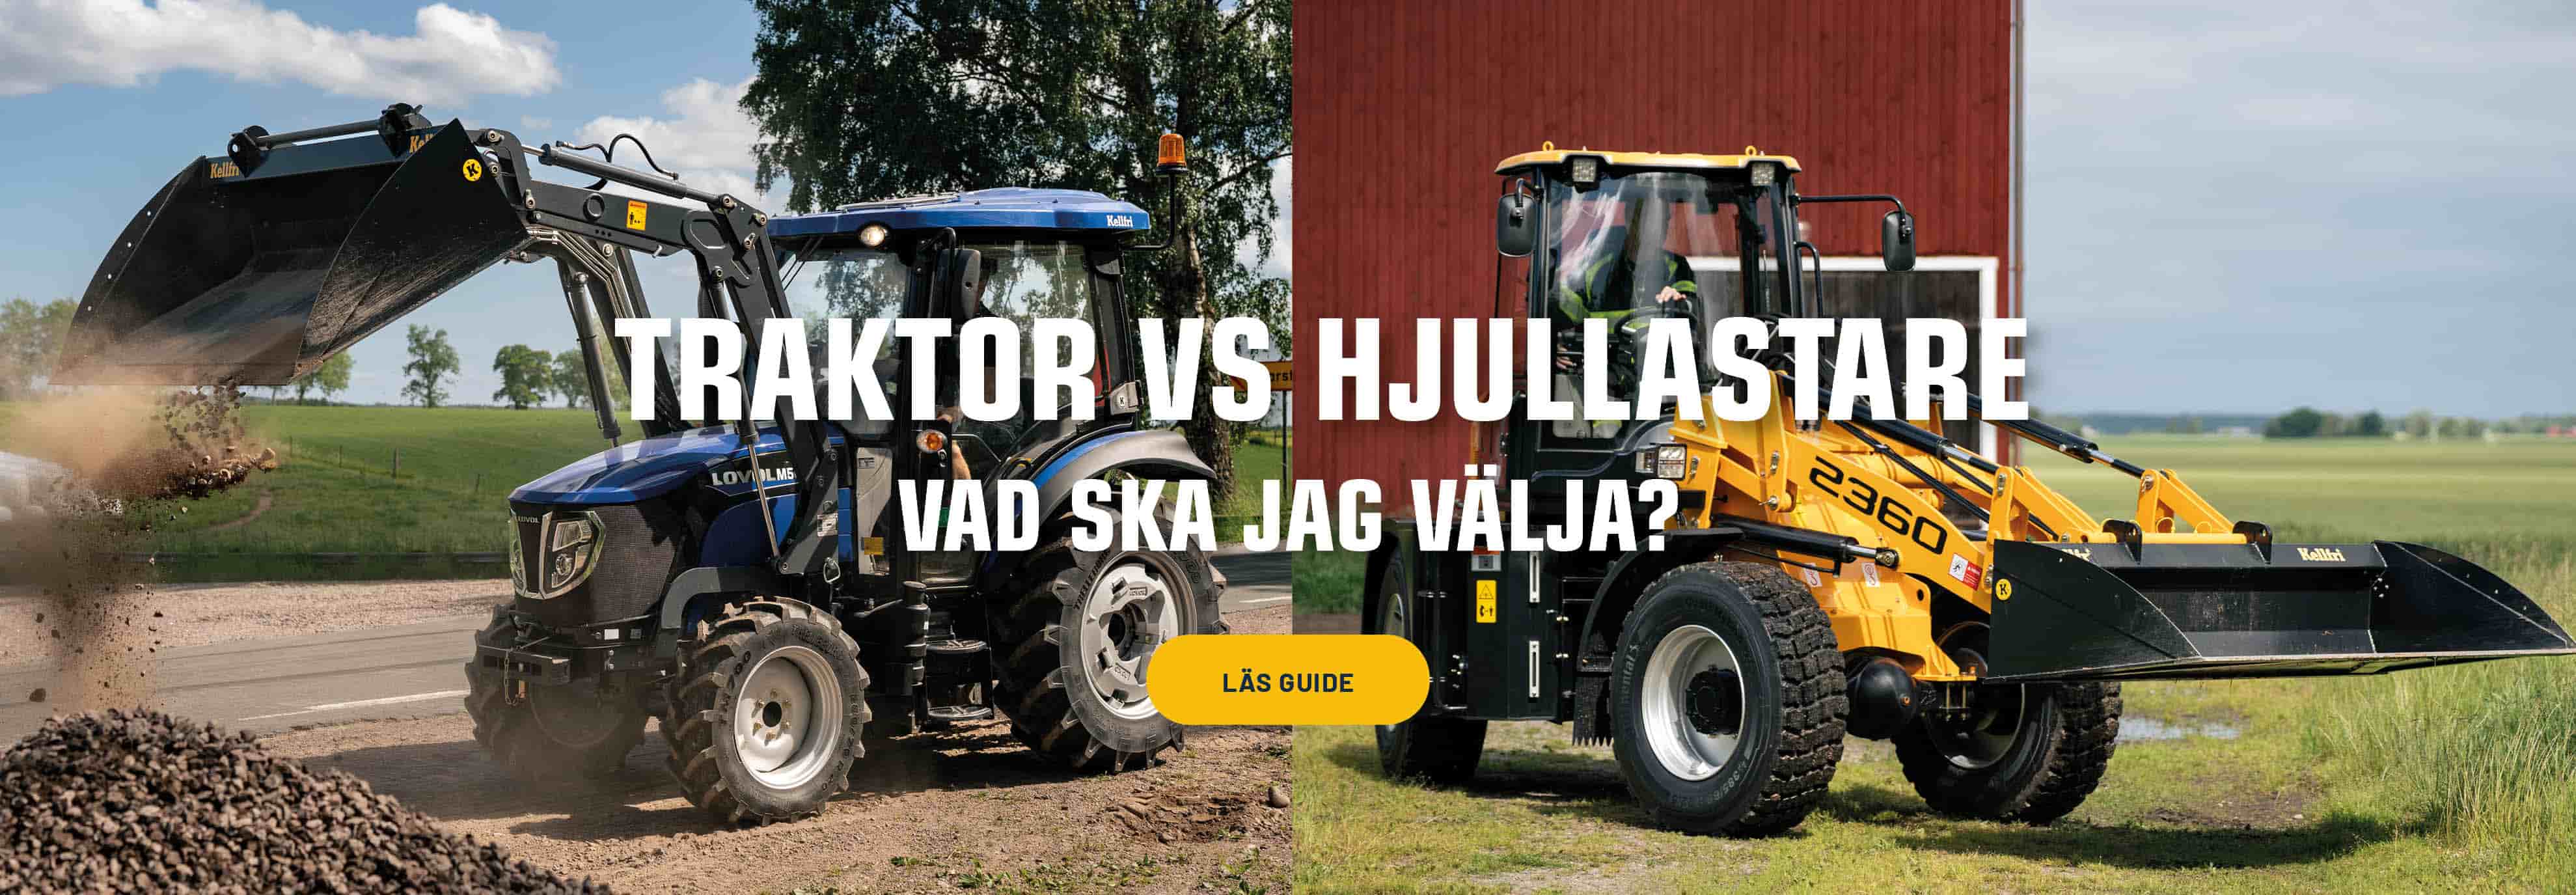 Lovol traktor vs Swekip hjullastare 1900x660.jpg